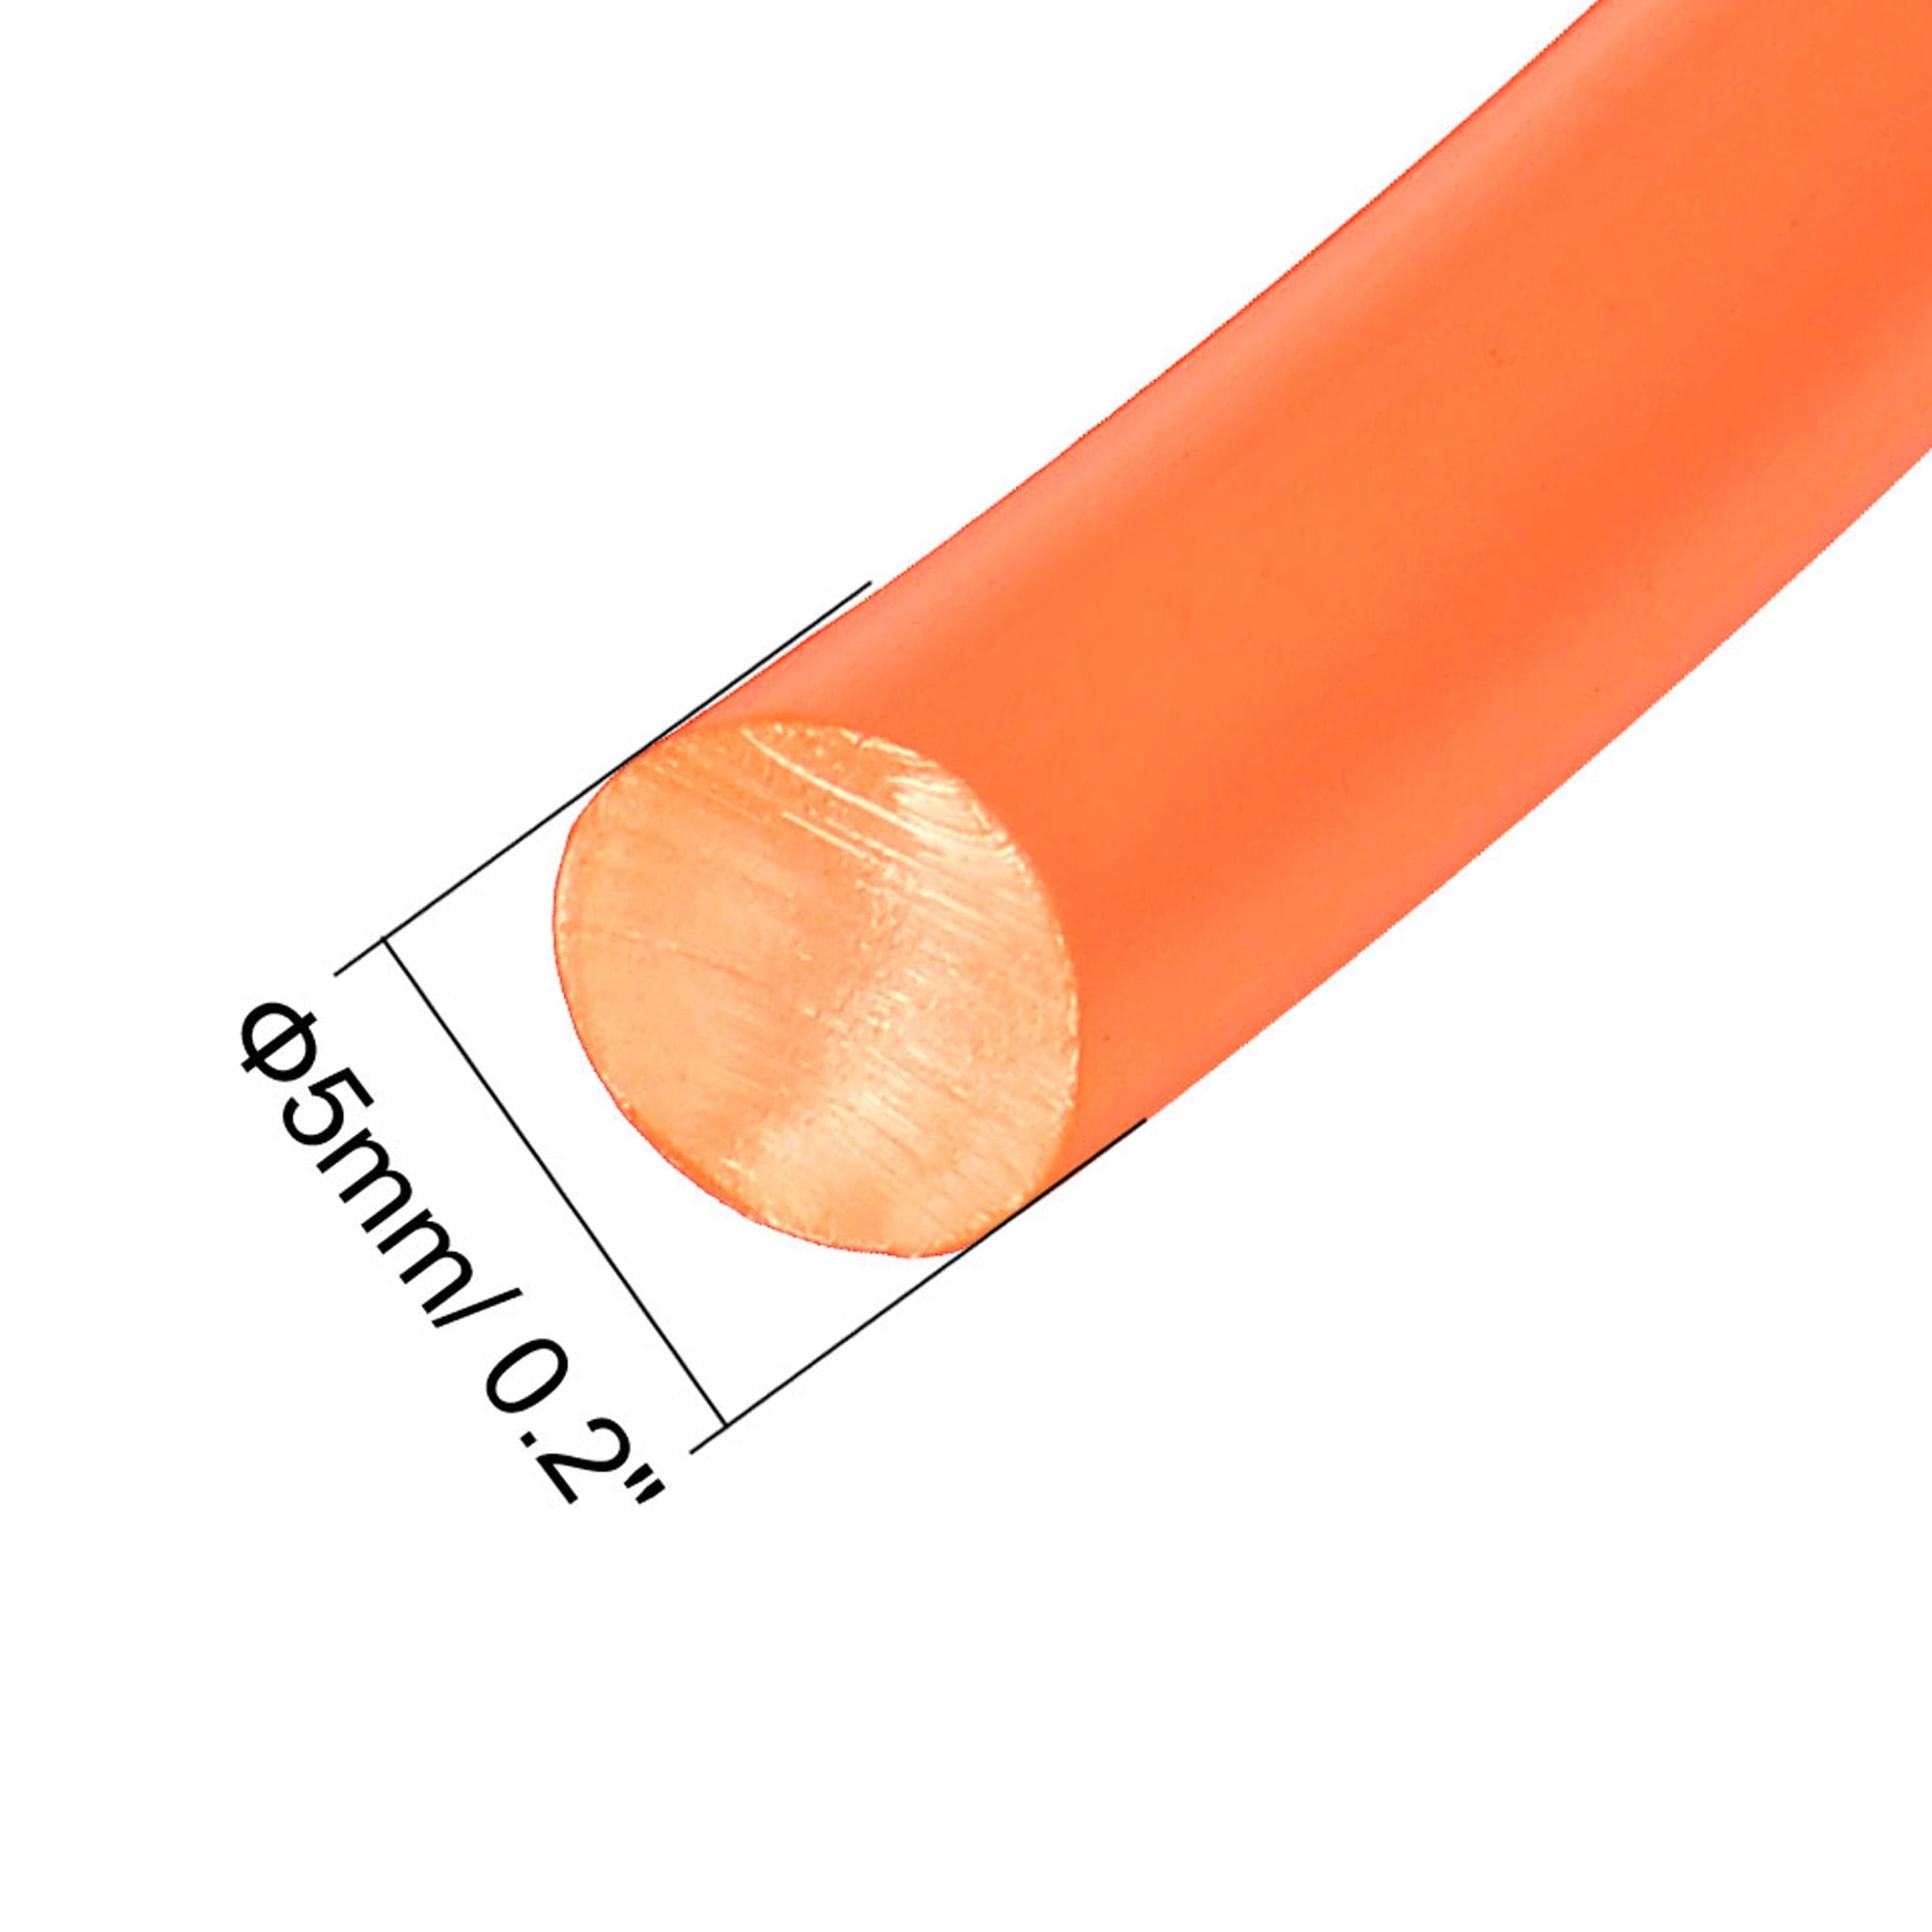 10ft 5mm PU Transmission Round Belt High-Performance Urethane Belting Orange 